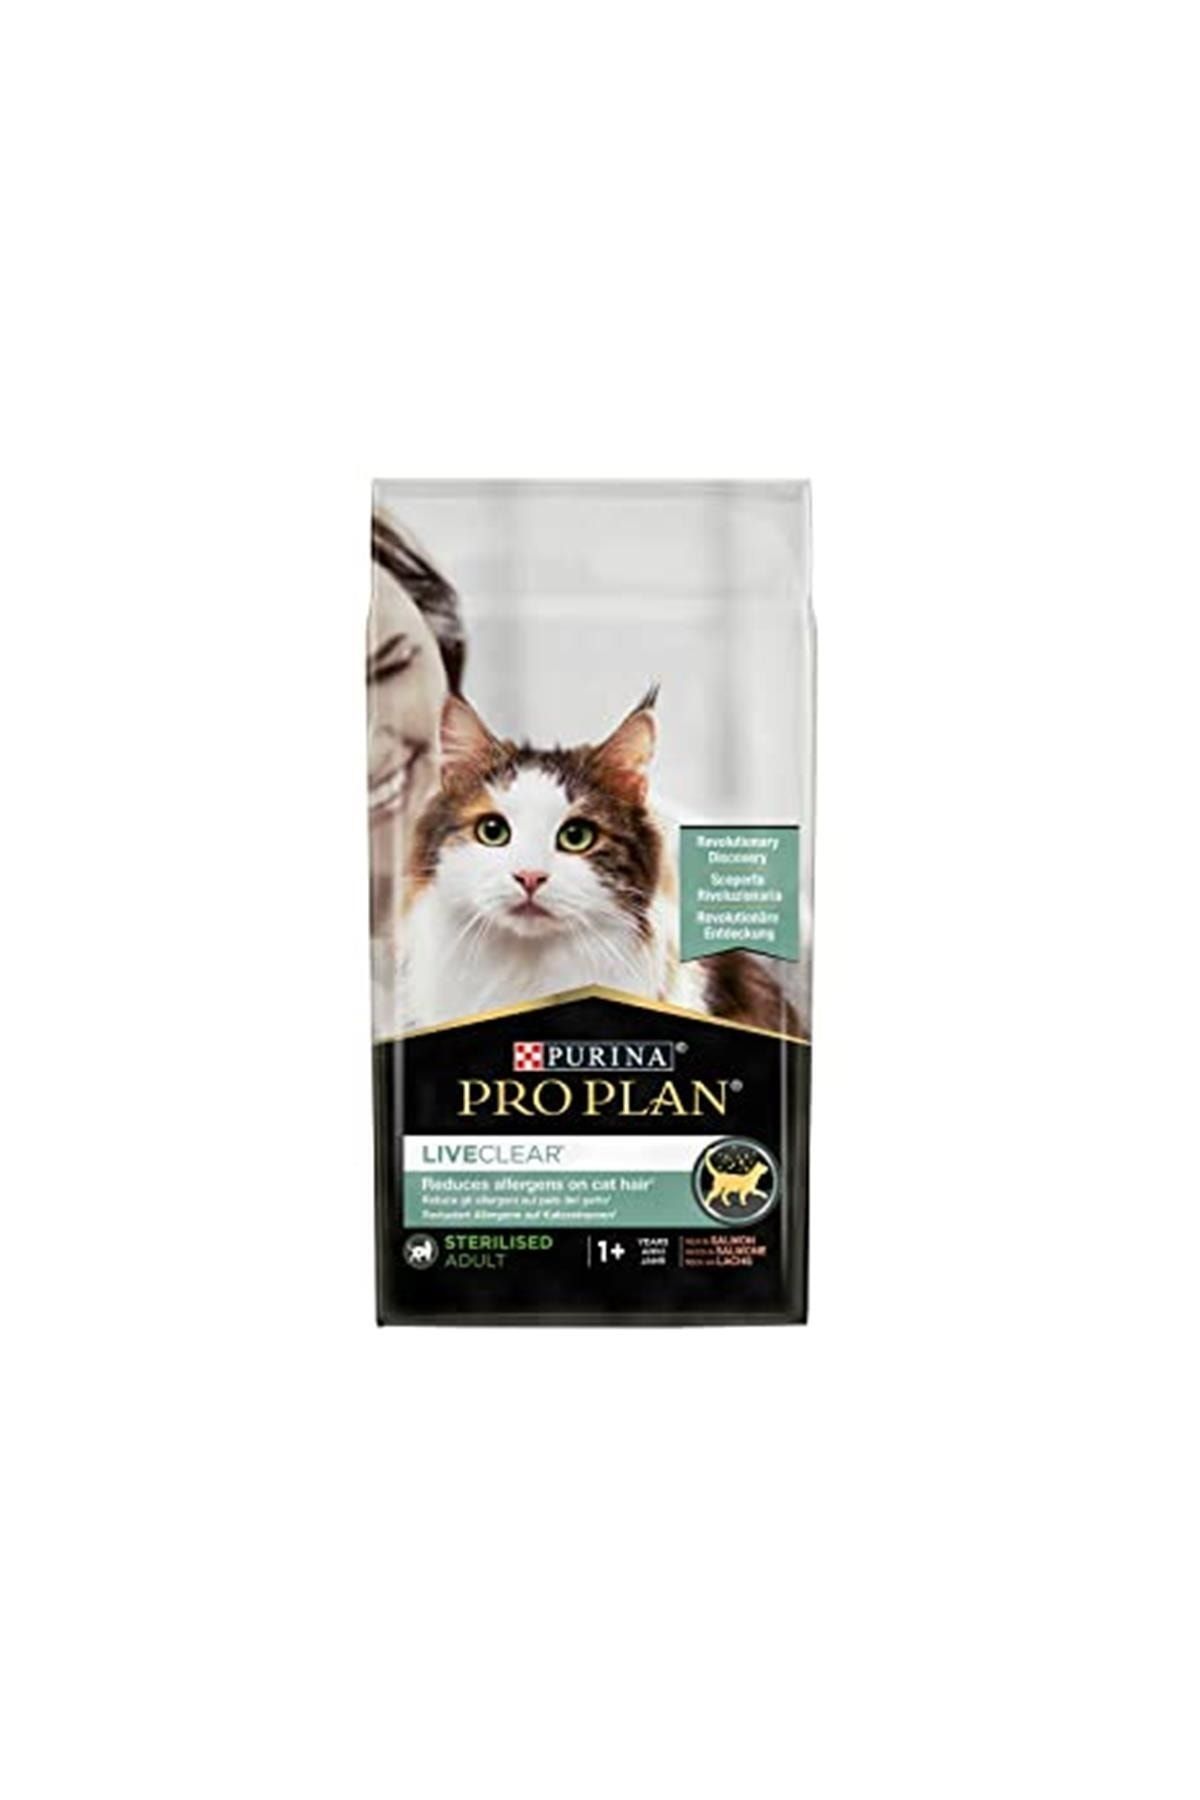 Корм для кошек Pro Plan® liveclear®. Проплан корм для кошек Live Clear. Purina Pro Plan для кошек Sterilised. Проплан Лив клир для кошек.